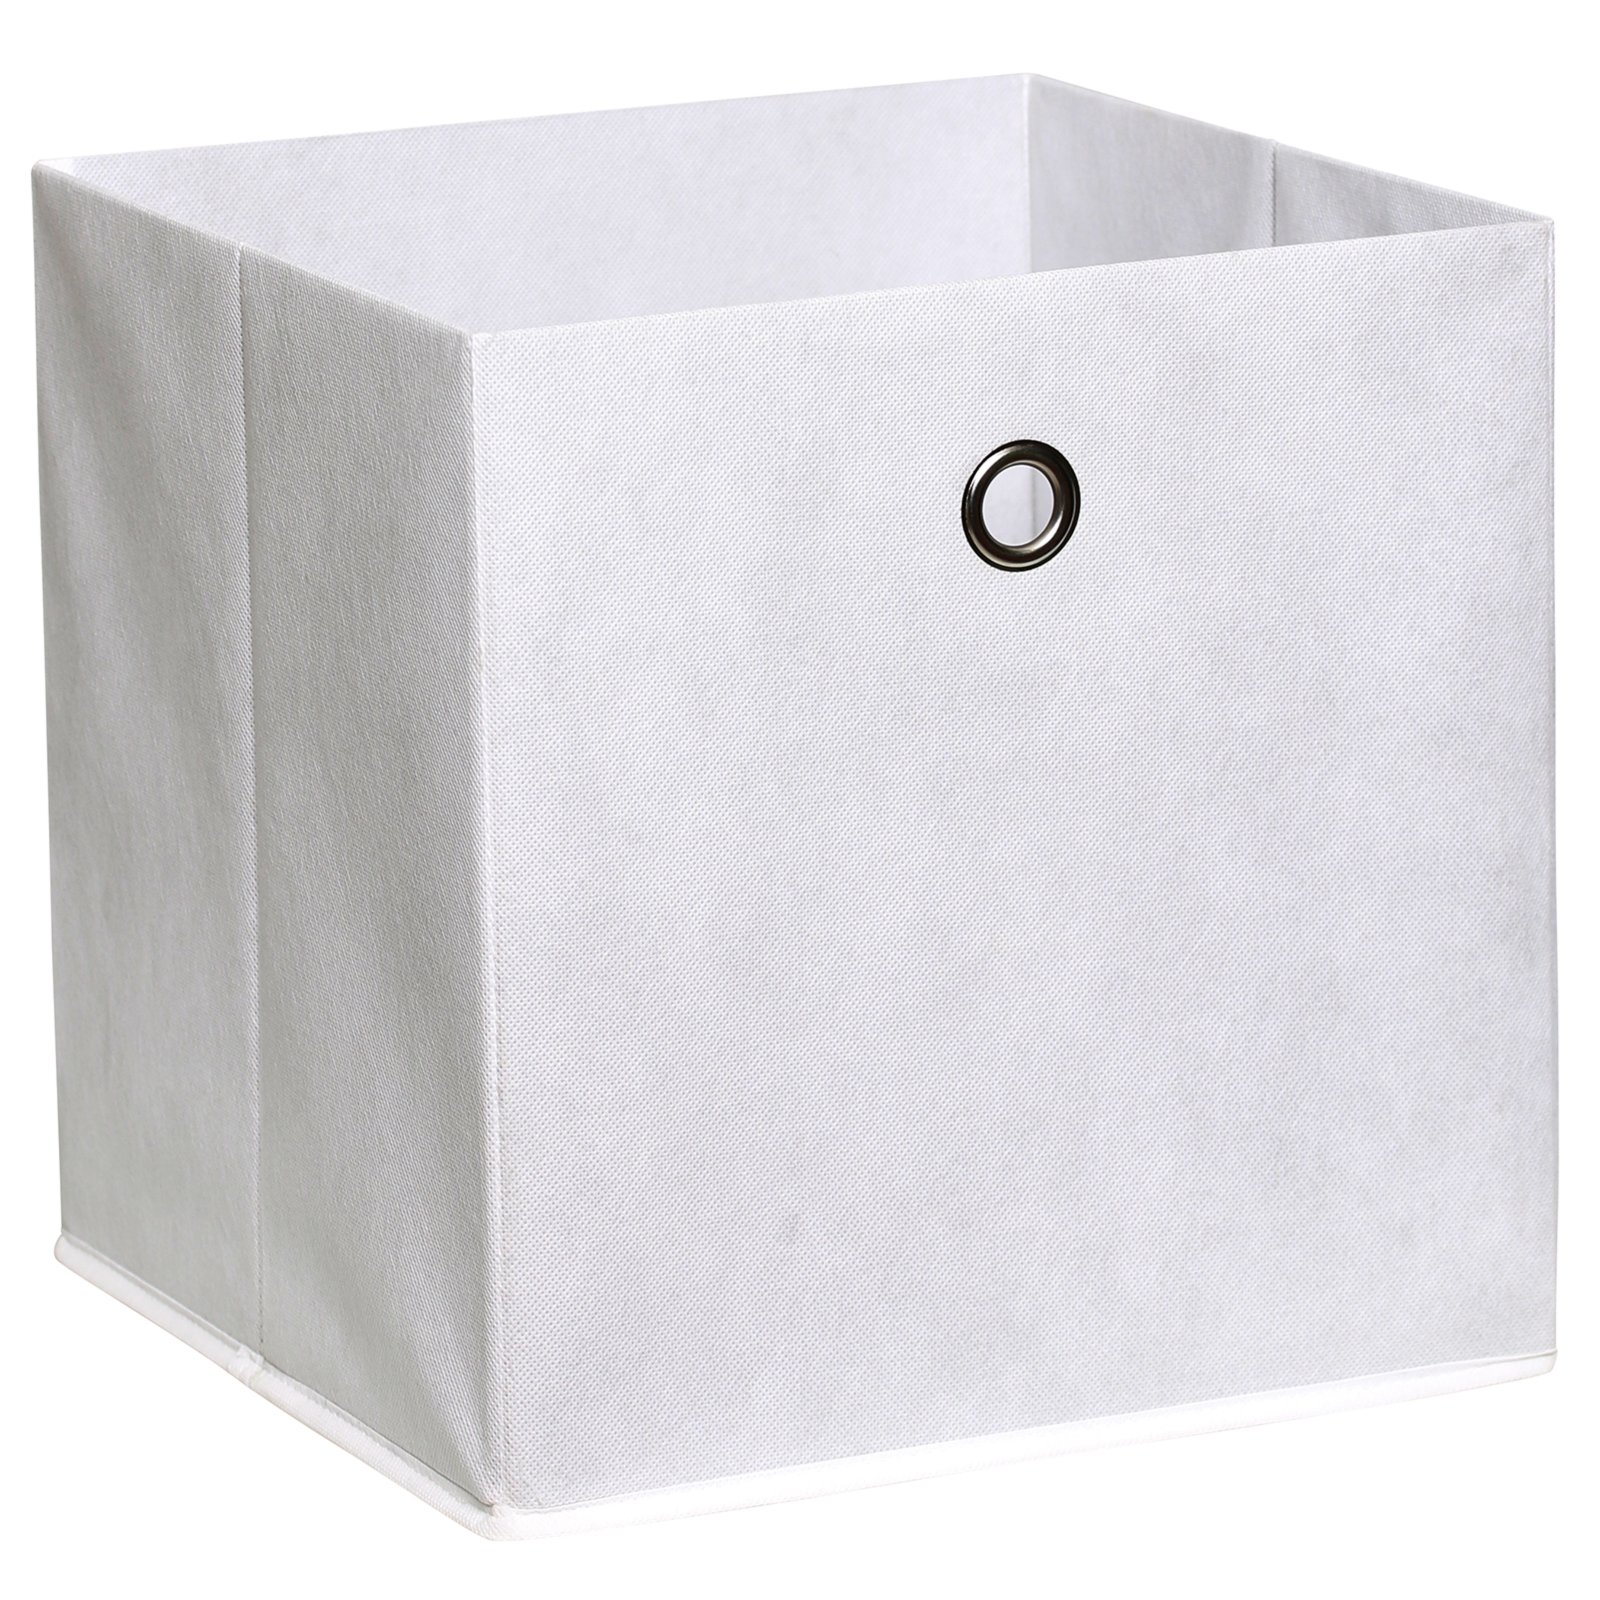 Faltbox - weiß - mit Metallöse - 32x32 cm